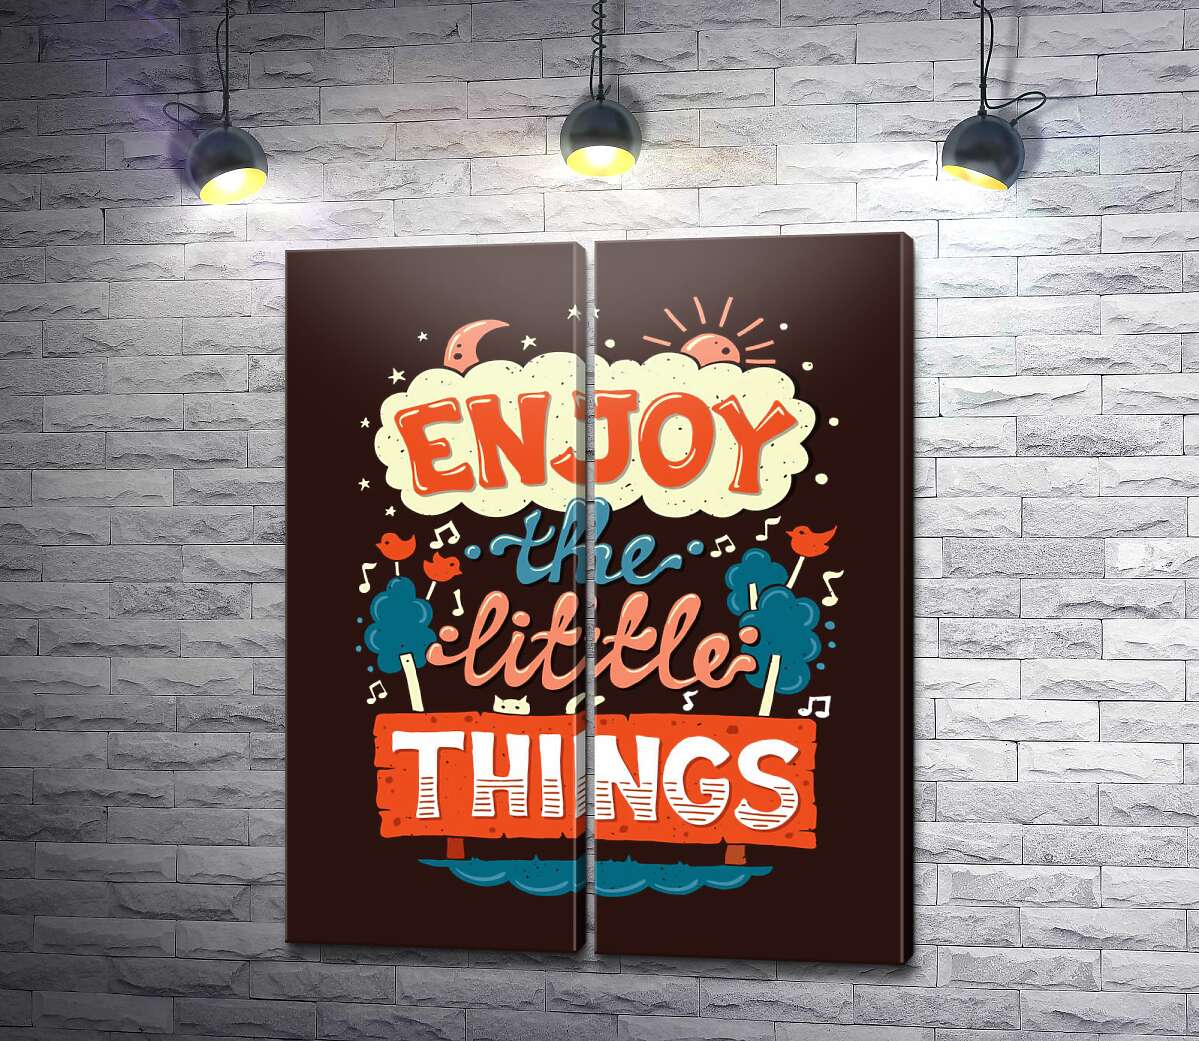 модульная картина Позитивная надпись: "Enjoy the Little Things"